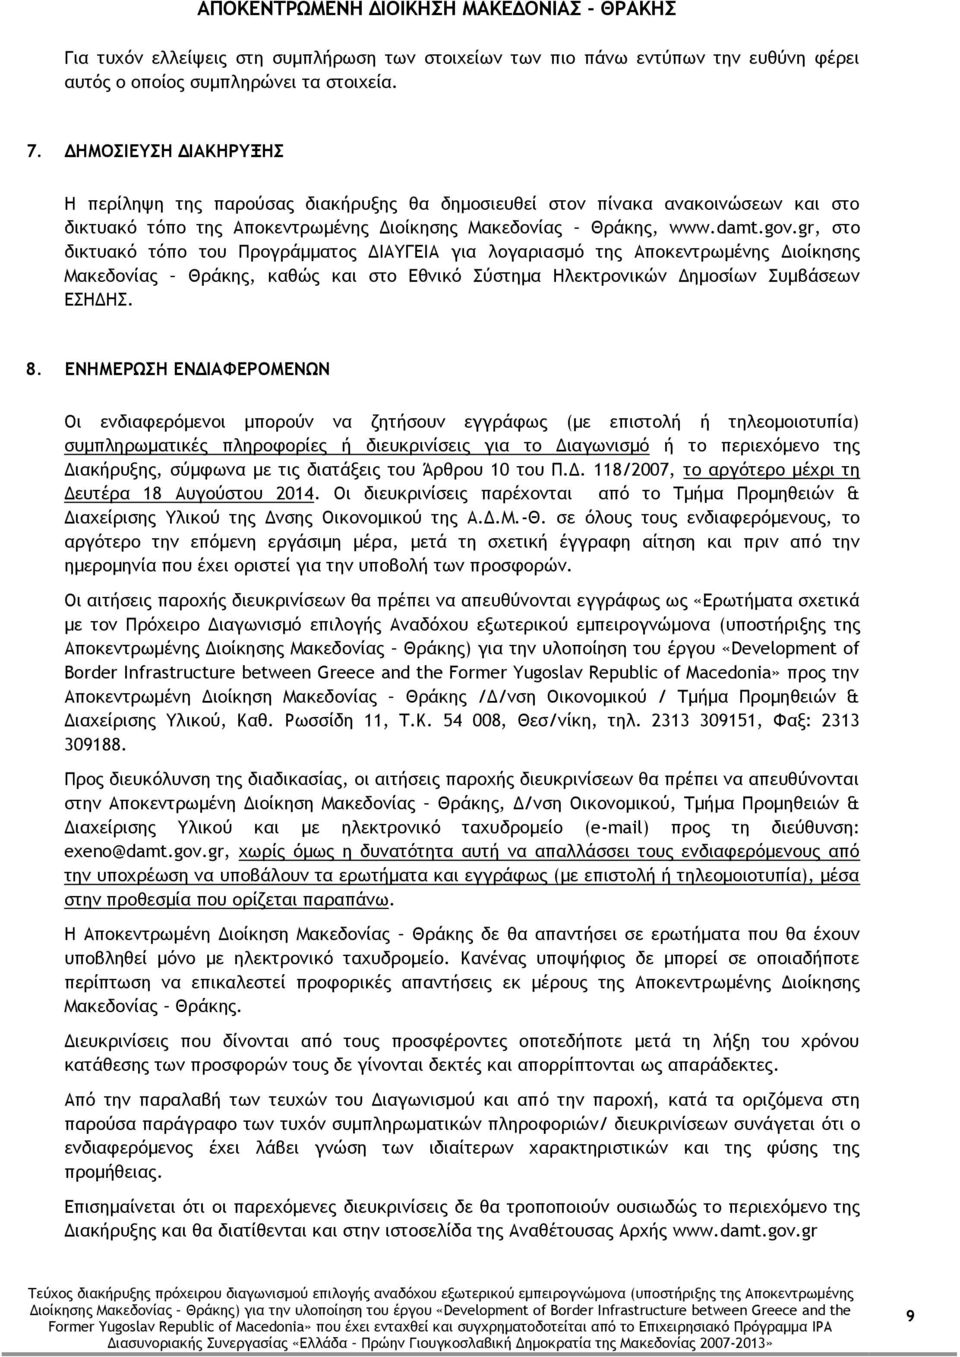 gr, στο δικτυακό τόπο του Προγράμματος ΔΙΑΥΓΕΙΑ για λογαριασμό της Αποκεντρωμένης Διοίκησης Μακεδονίας Θράκης, καθώς και στο Εθνικό Σύστημα Ηλεκτρονικών Δημοσίων Συμβάσεων ΕΣΗΔΗΣ. 8.